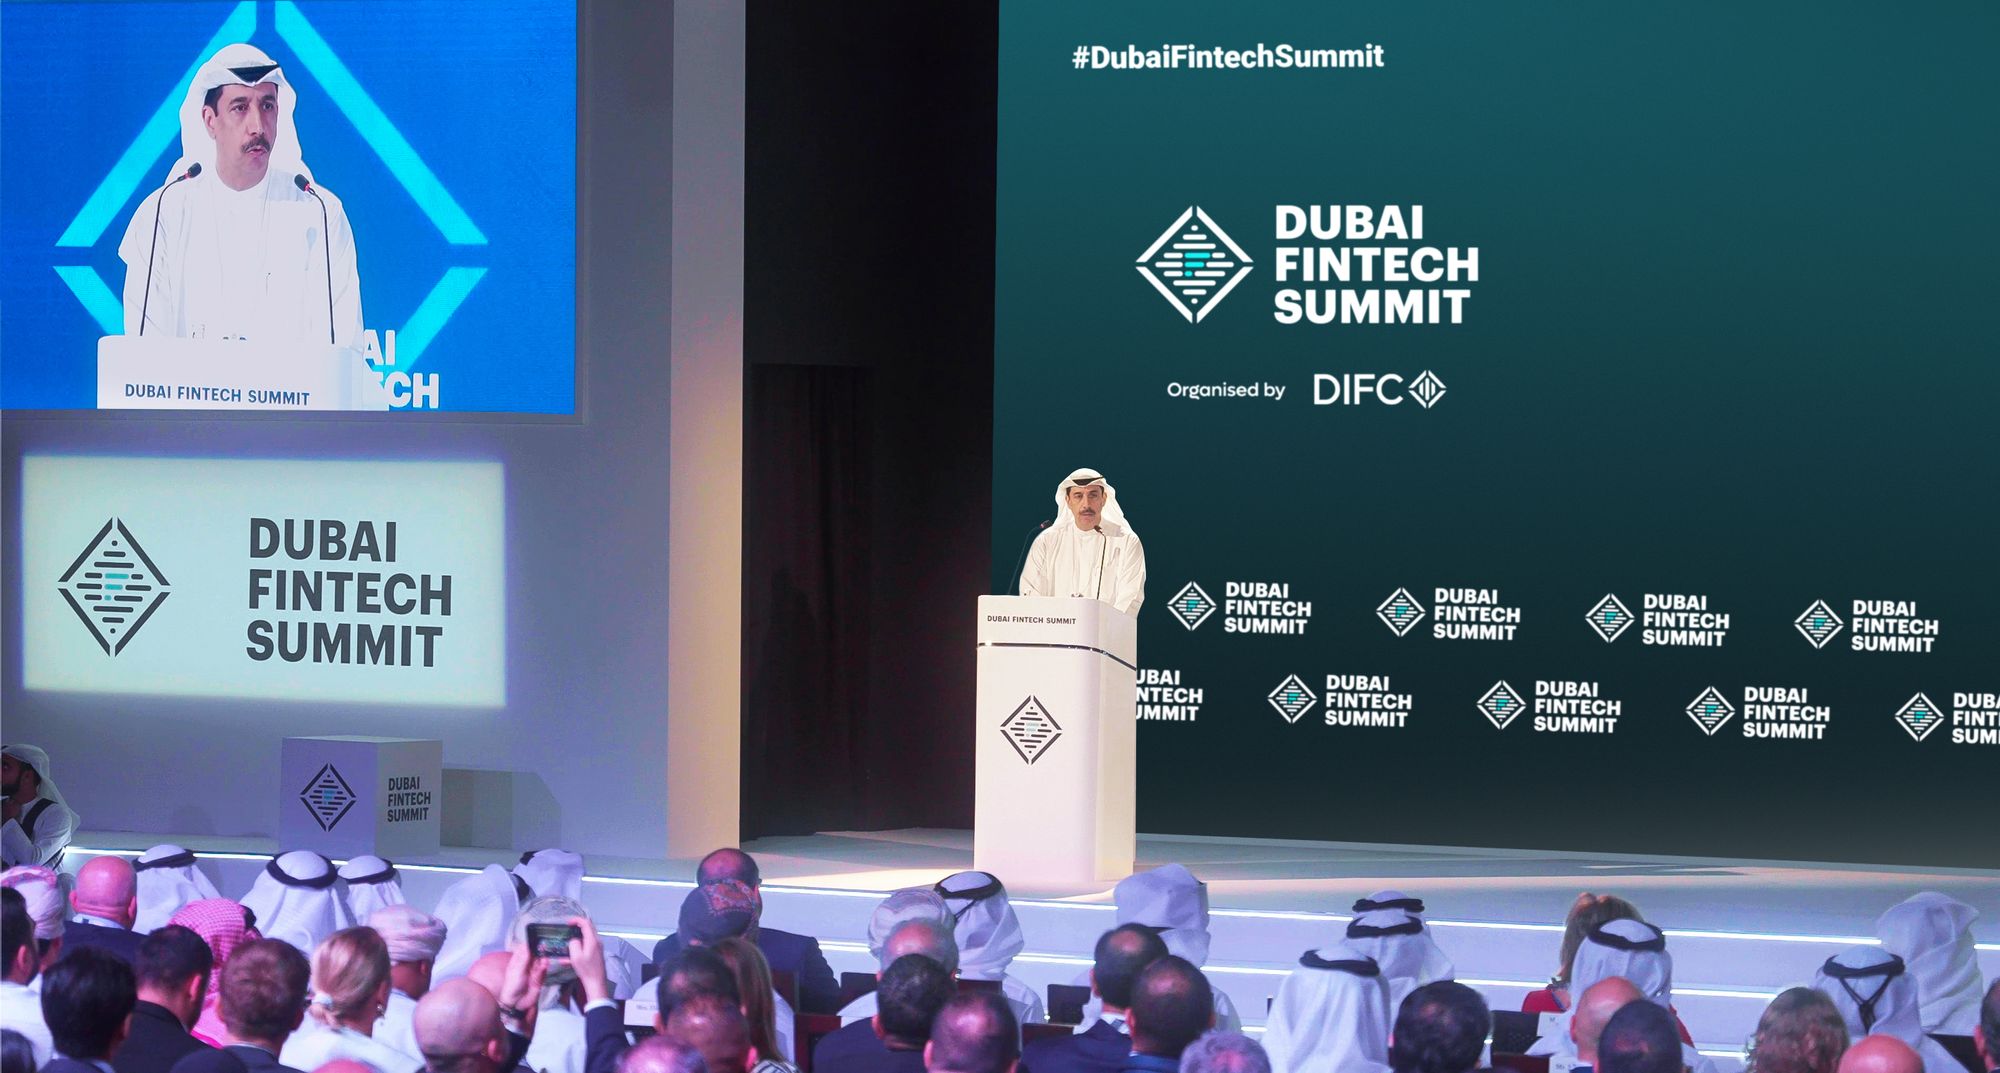 عيسى كاظم، محافظ مركز دبي المالي العالمي، يلقي الكلمة الافتتاحية في قمة دبي للتكنولوجيا المالية ٢٠٢٣